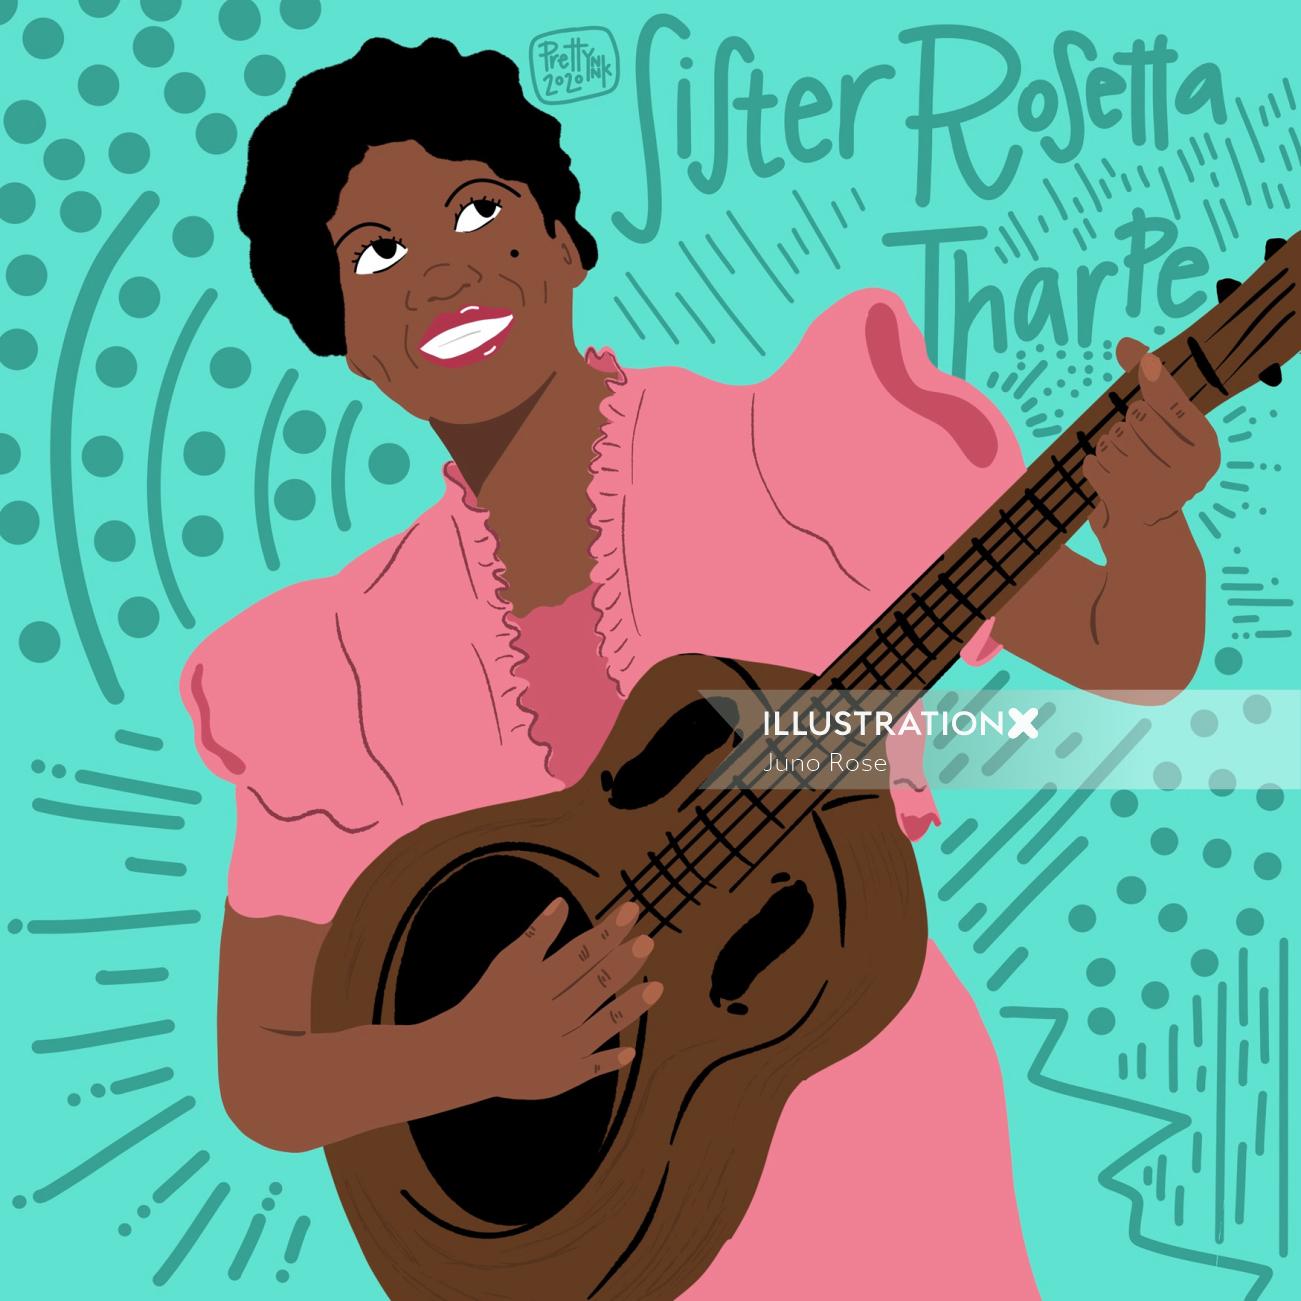 Portraiture of Sister Rosetta Tharpe, American singer